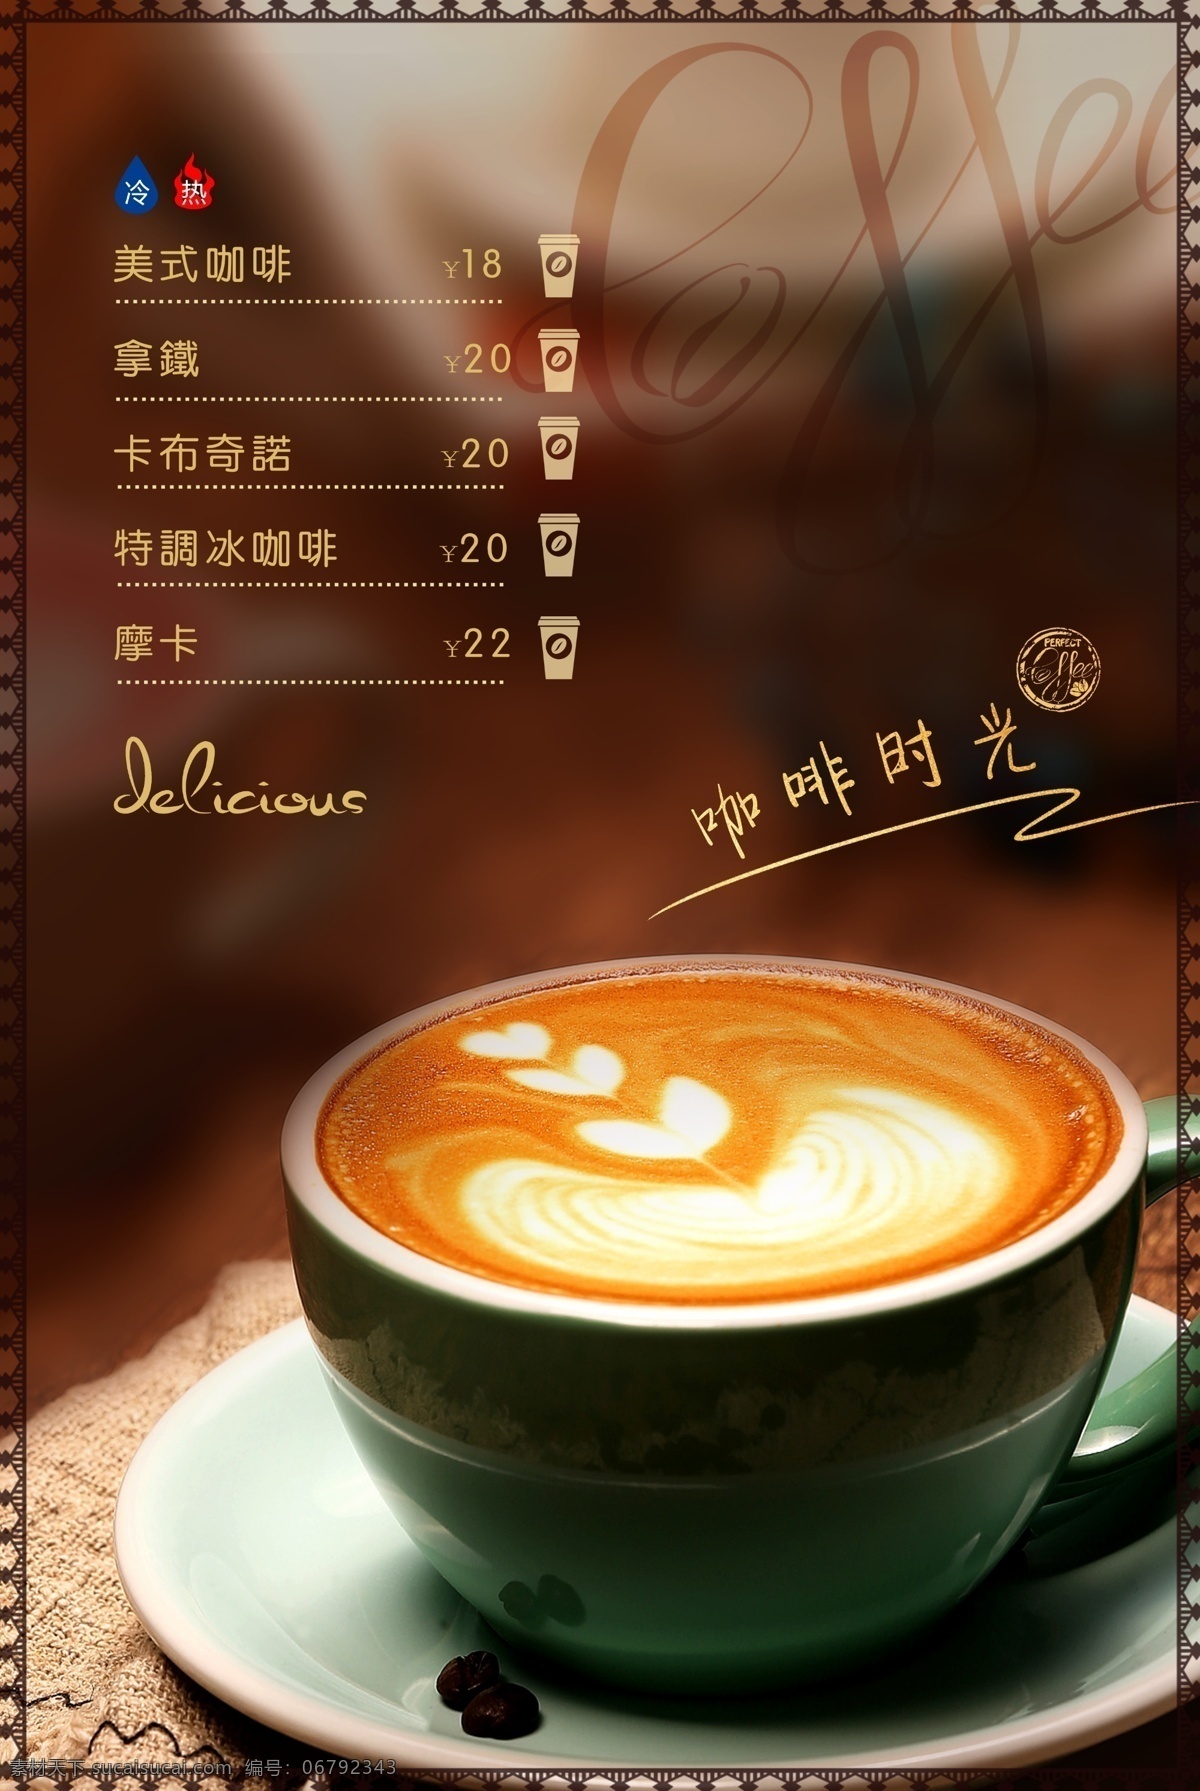 咖啡菜单 菜谱 咖啡 咖啡素材 食品 餐饮 菜单 价目表